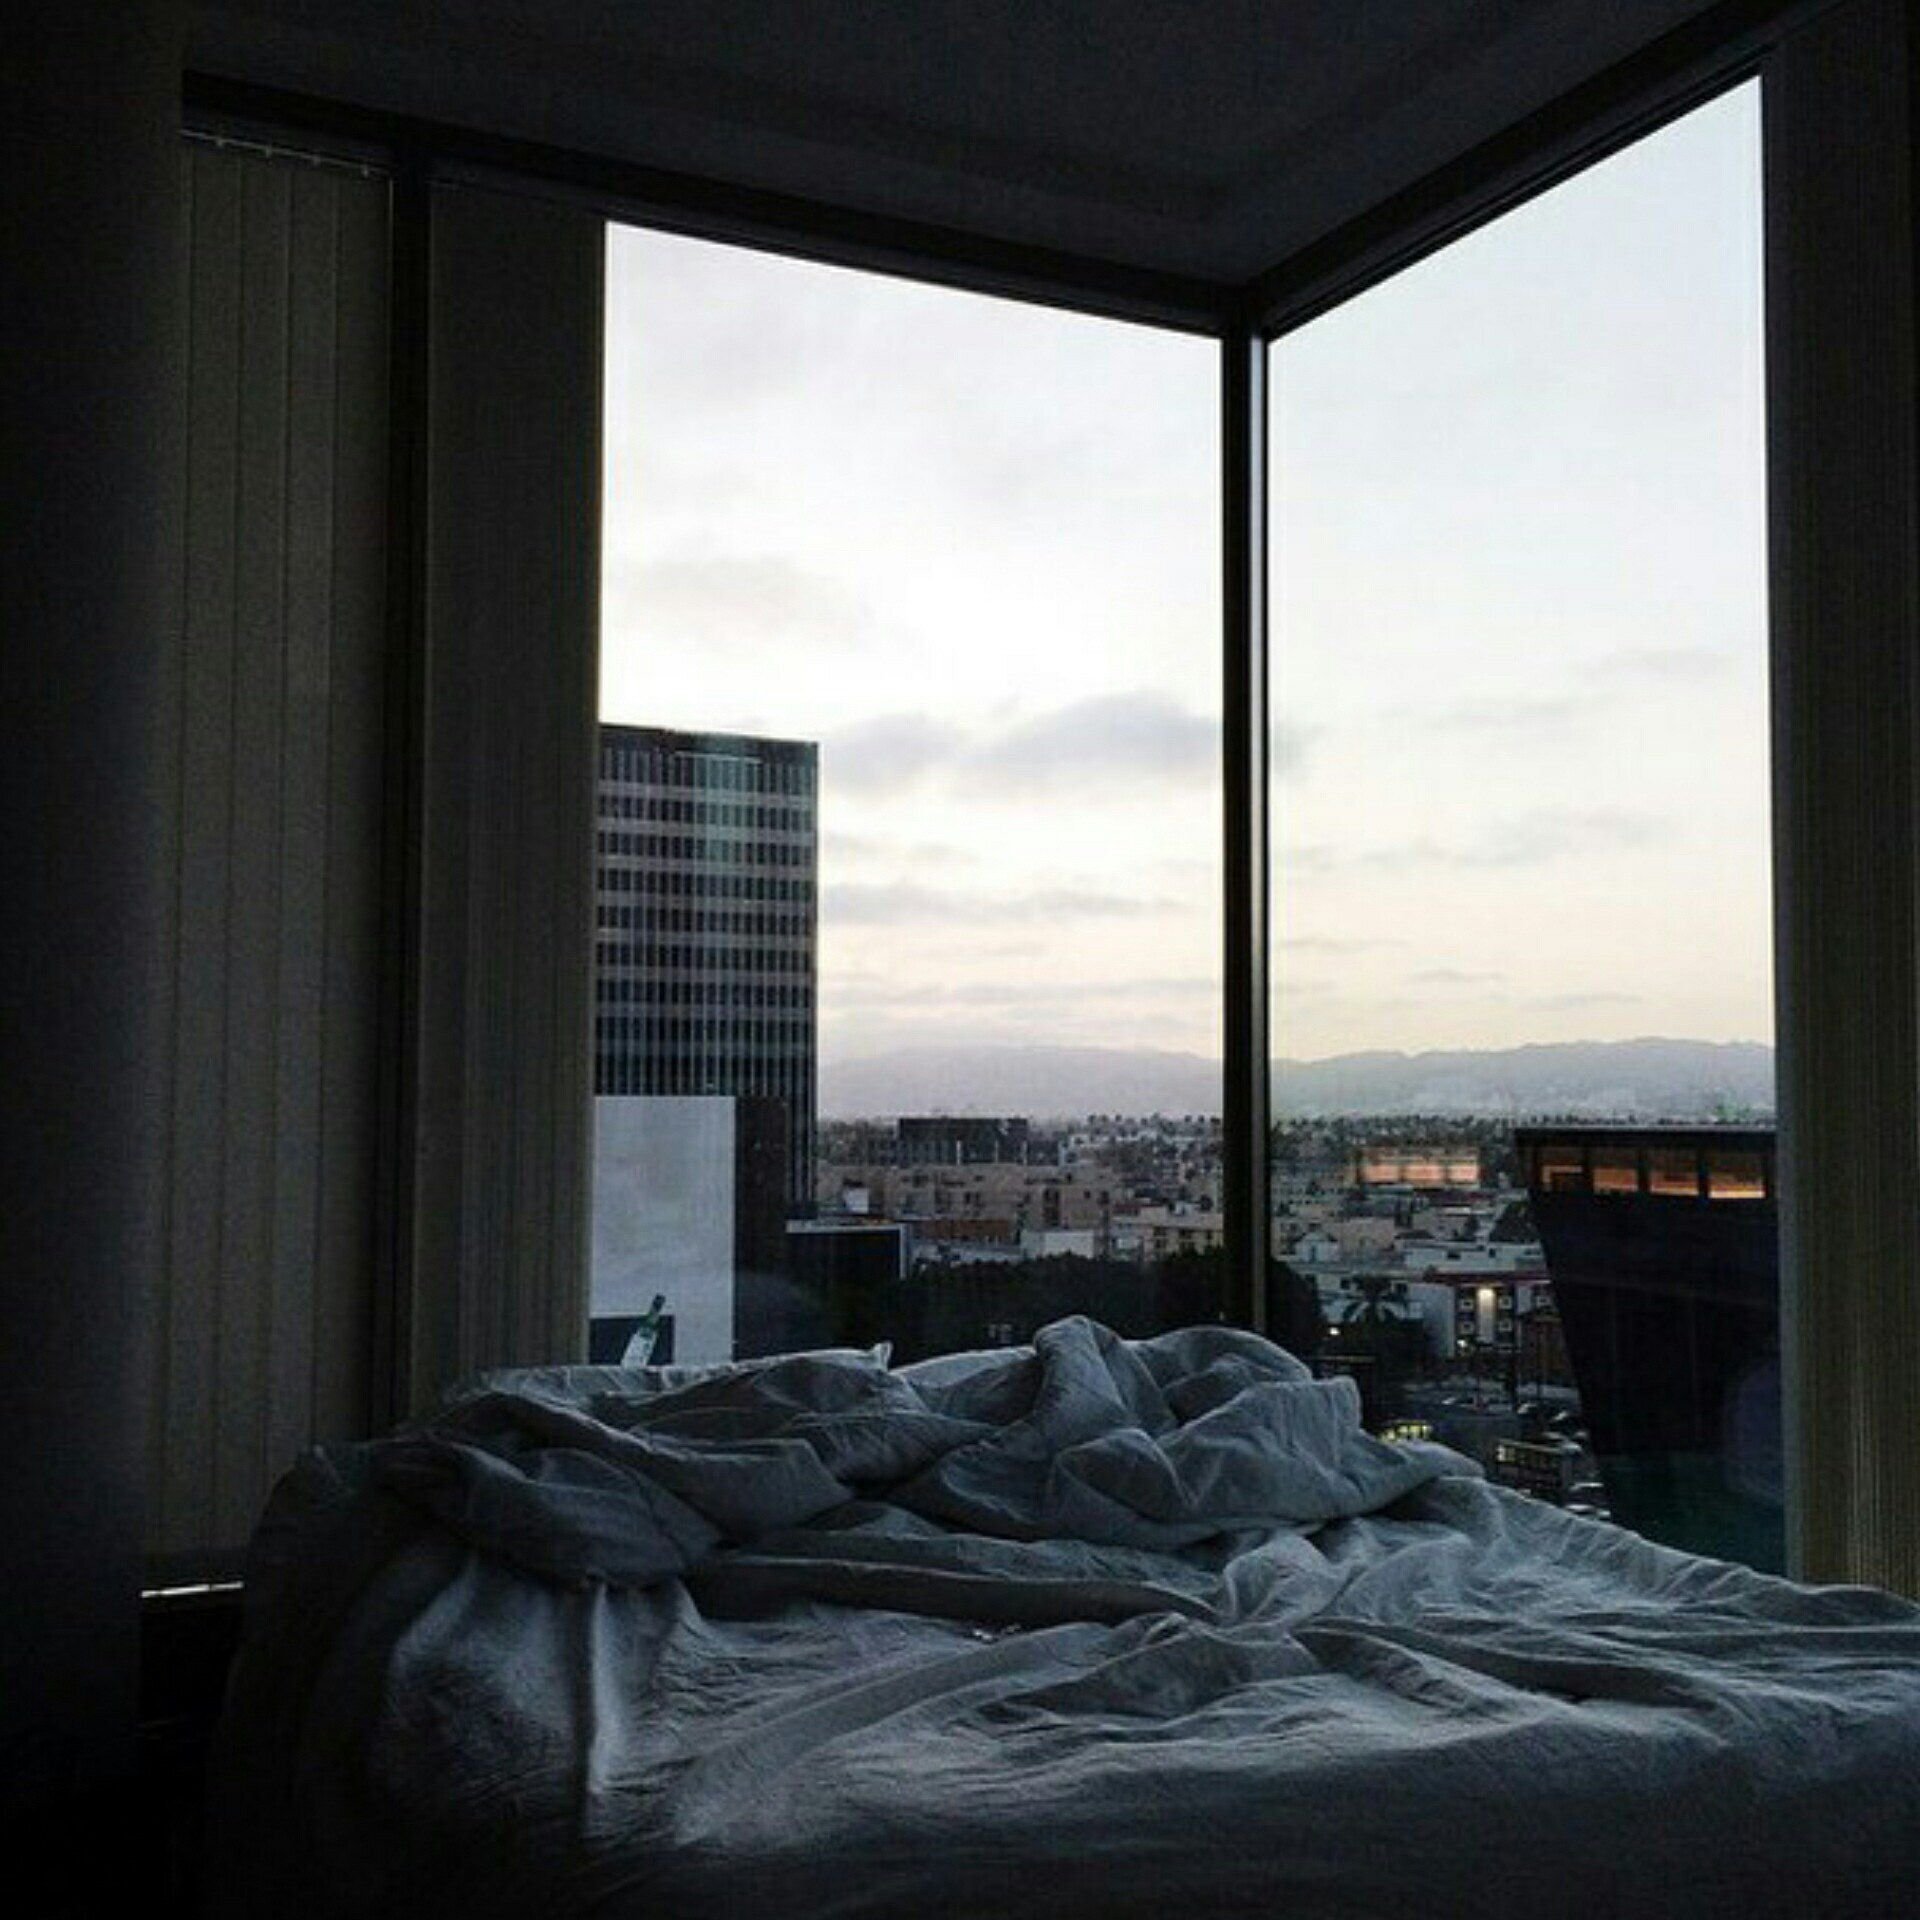 Снятся черные окна. Кровать у панорамного окна. Панорамные виды из окна многоэтажки. Панорамные окна на высоких этажах. Спальня с панорамными окнами.